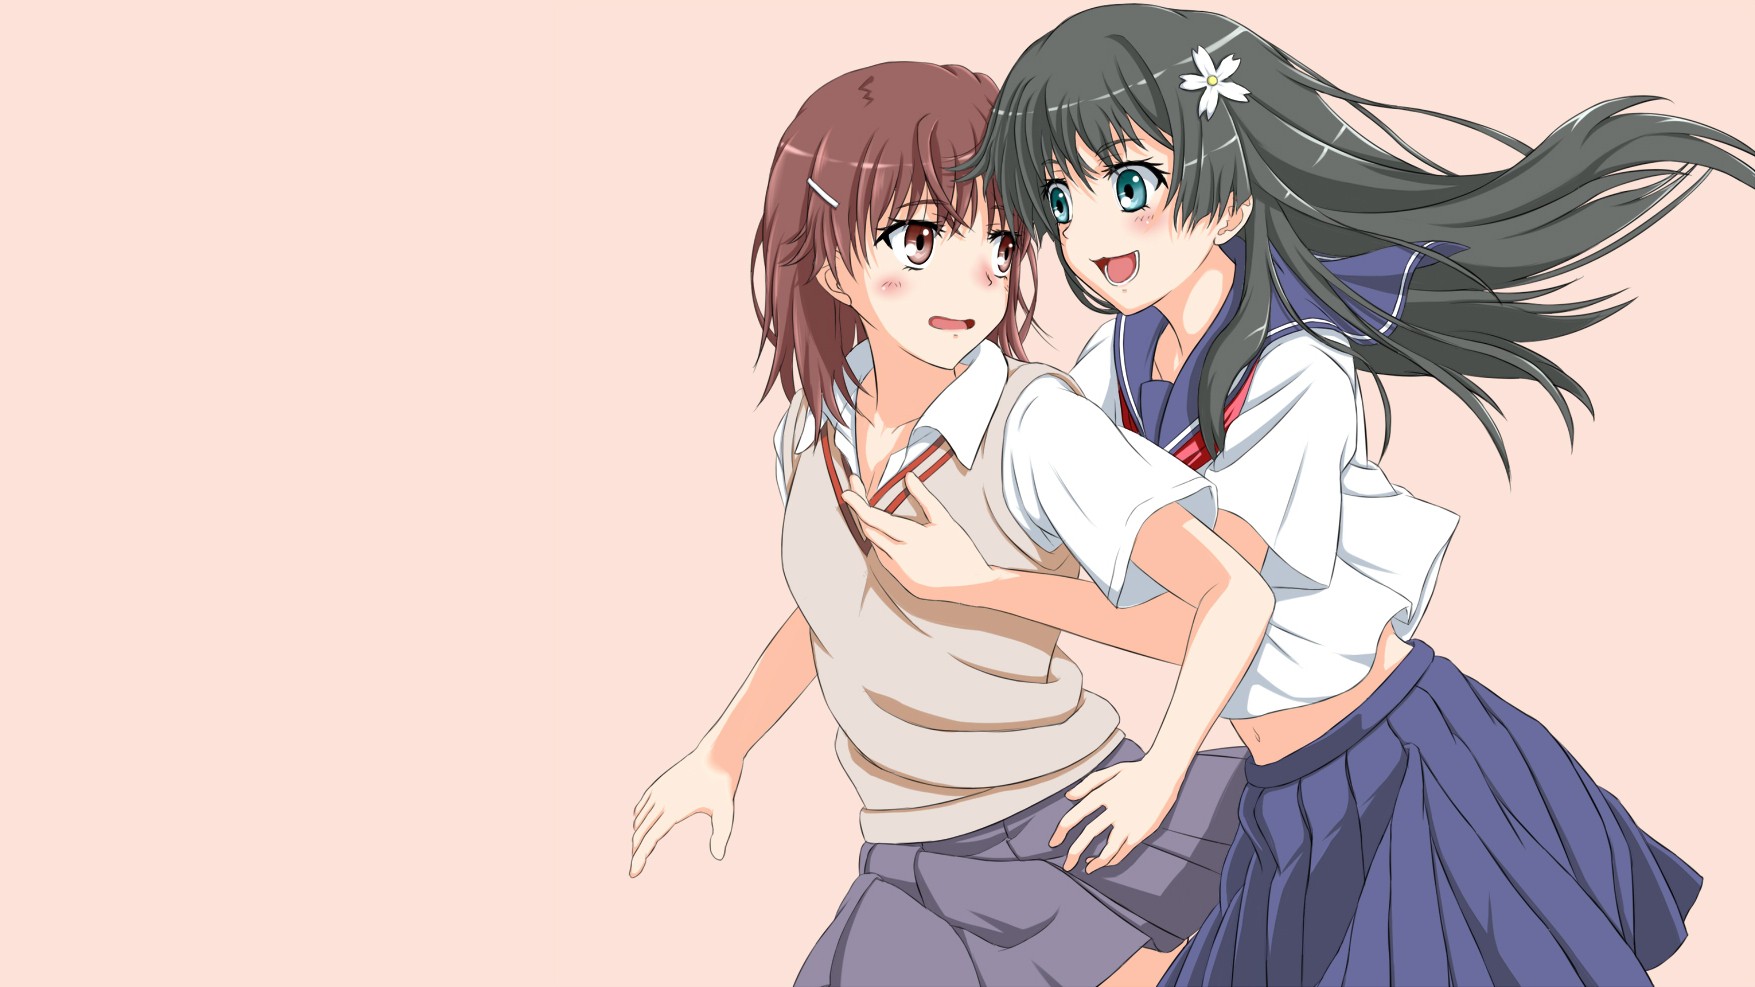 Anime Anime Girls Misaka Mikoto Saten Ruiko To Aru Kagaku No Railgun To Aru Majutsu No Index School  1755x987